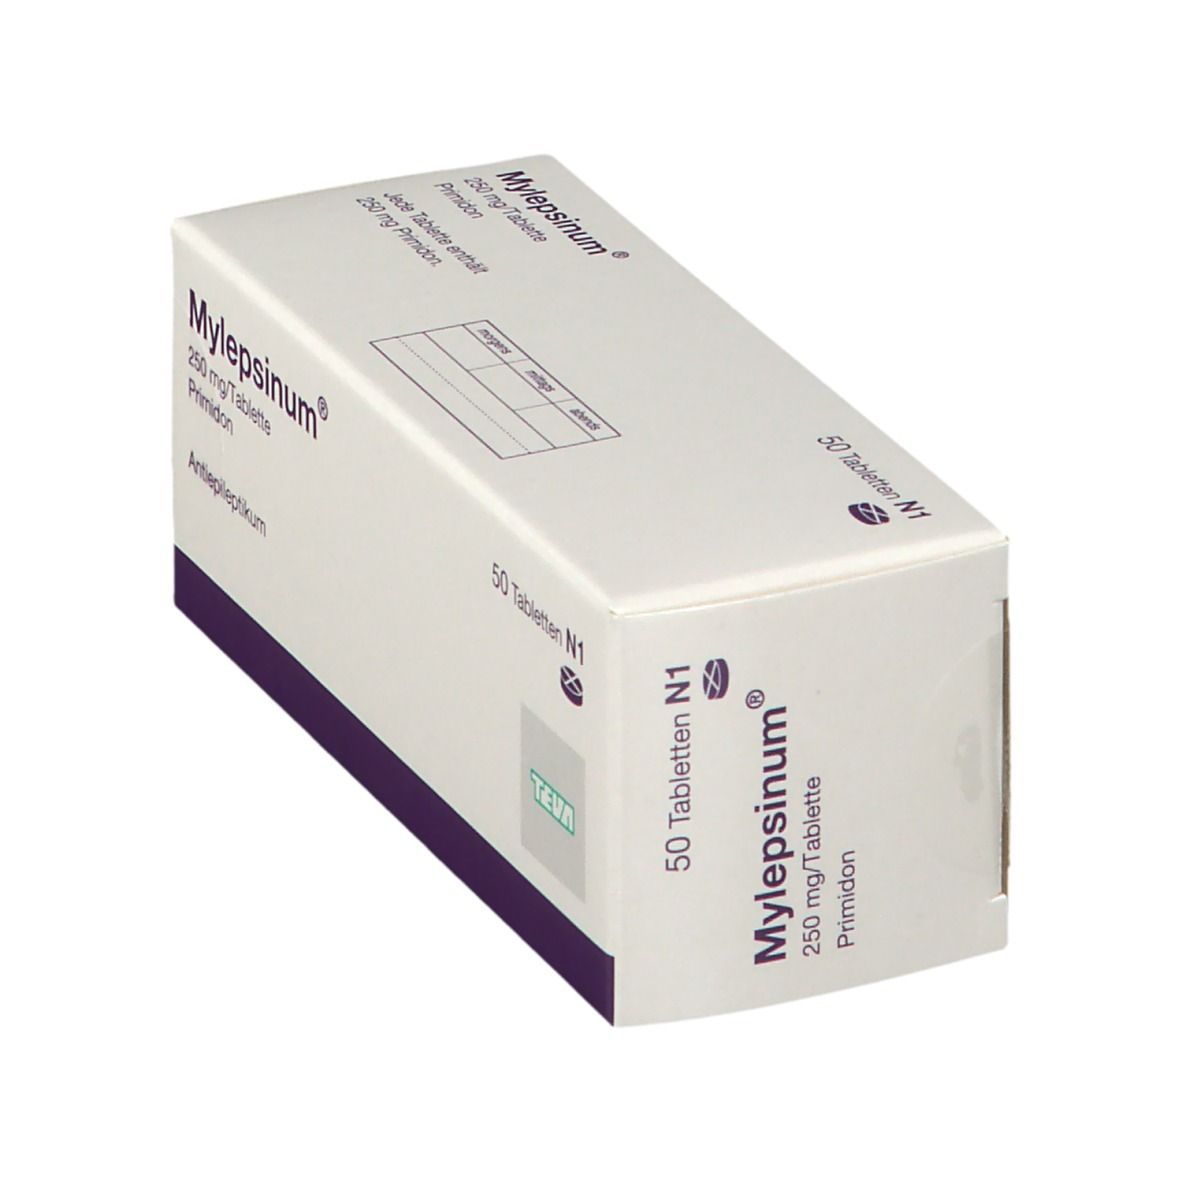 Mylepsinum® 250 mg